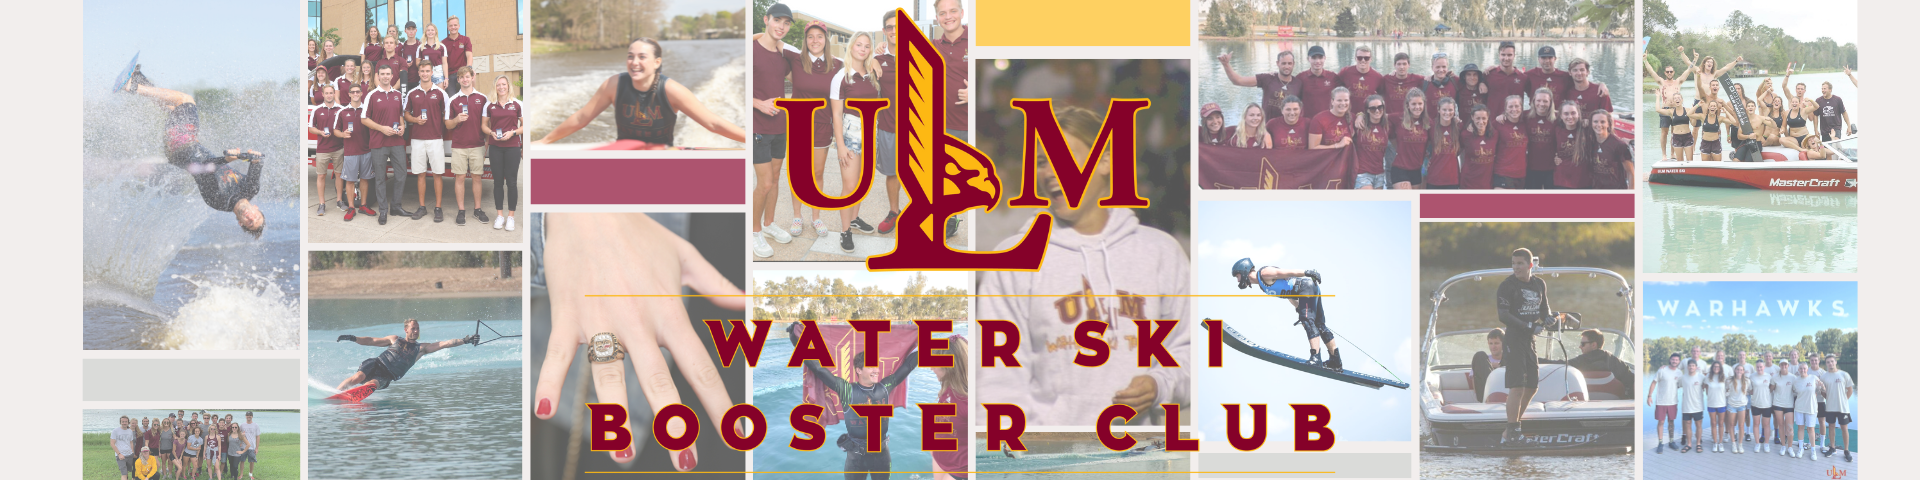 Waterski booster club header banner